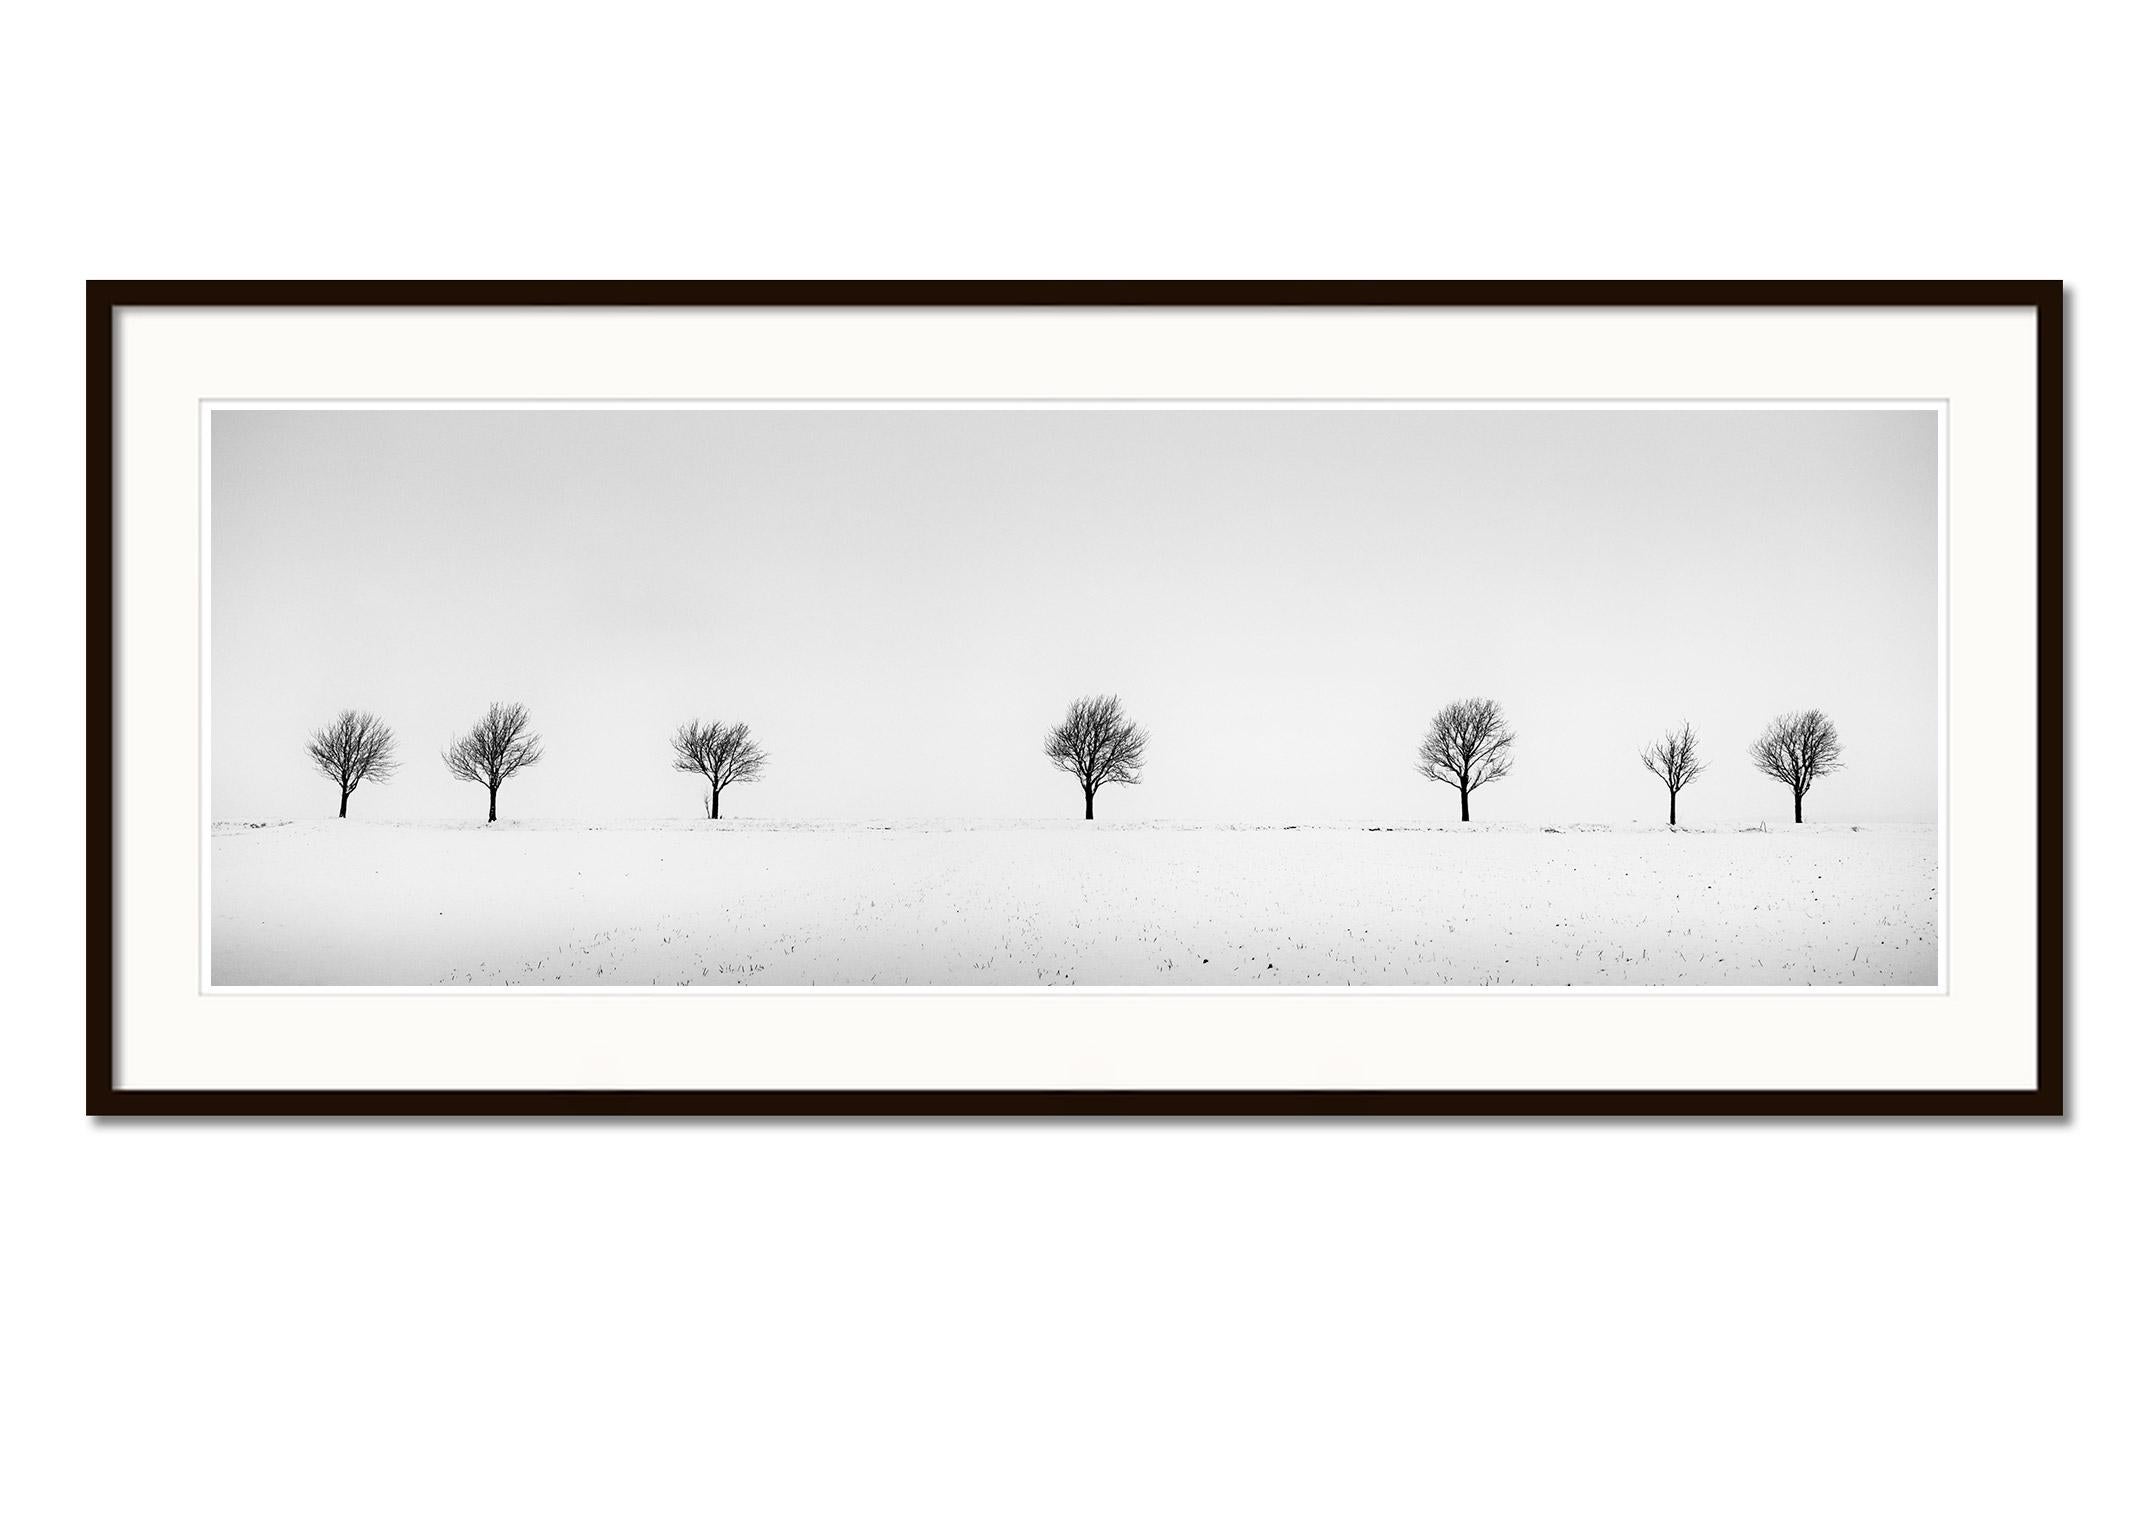 Cherry Trees in Snow Field, Panorama, Schwarz-Weiß-Fotografie, Landschaft (Grau), Landscape Photograph, von Gerald Berghammer